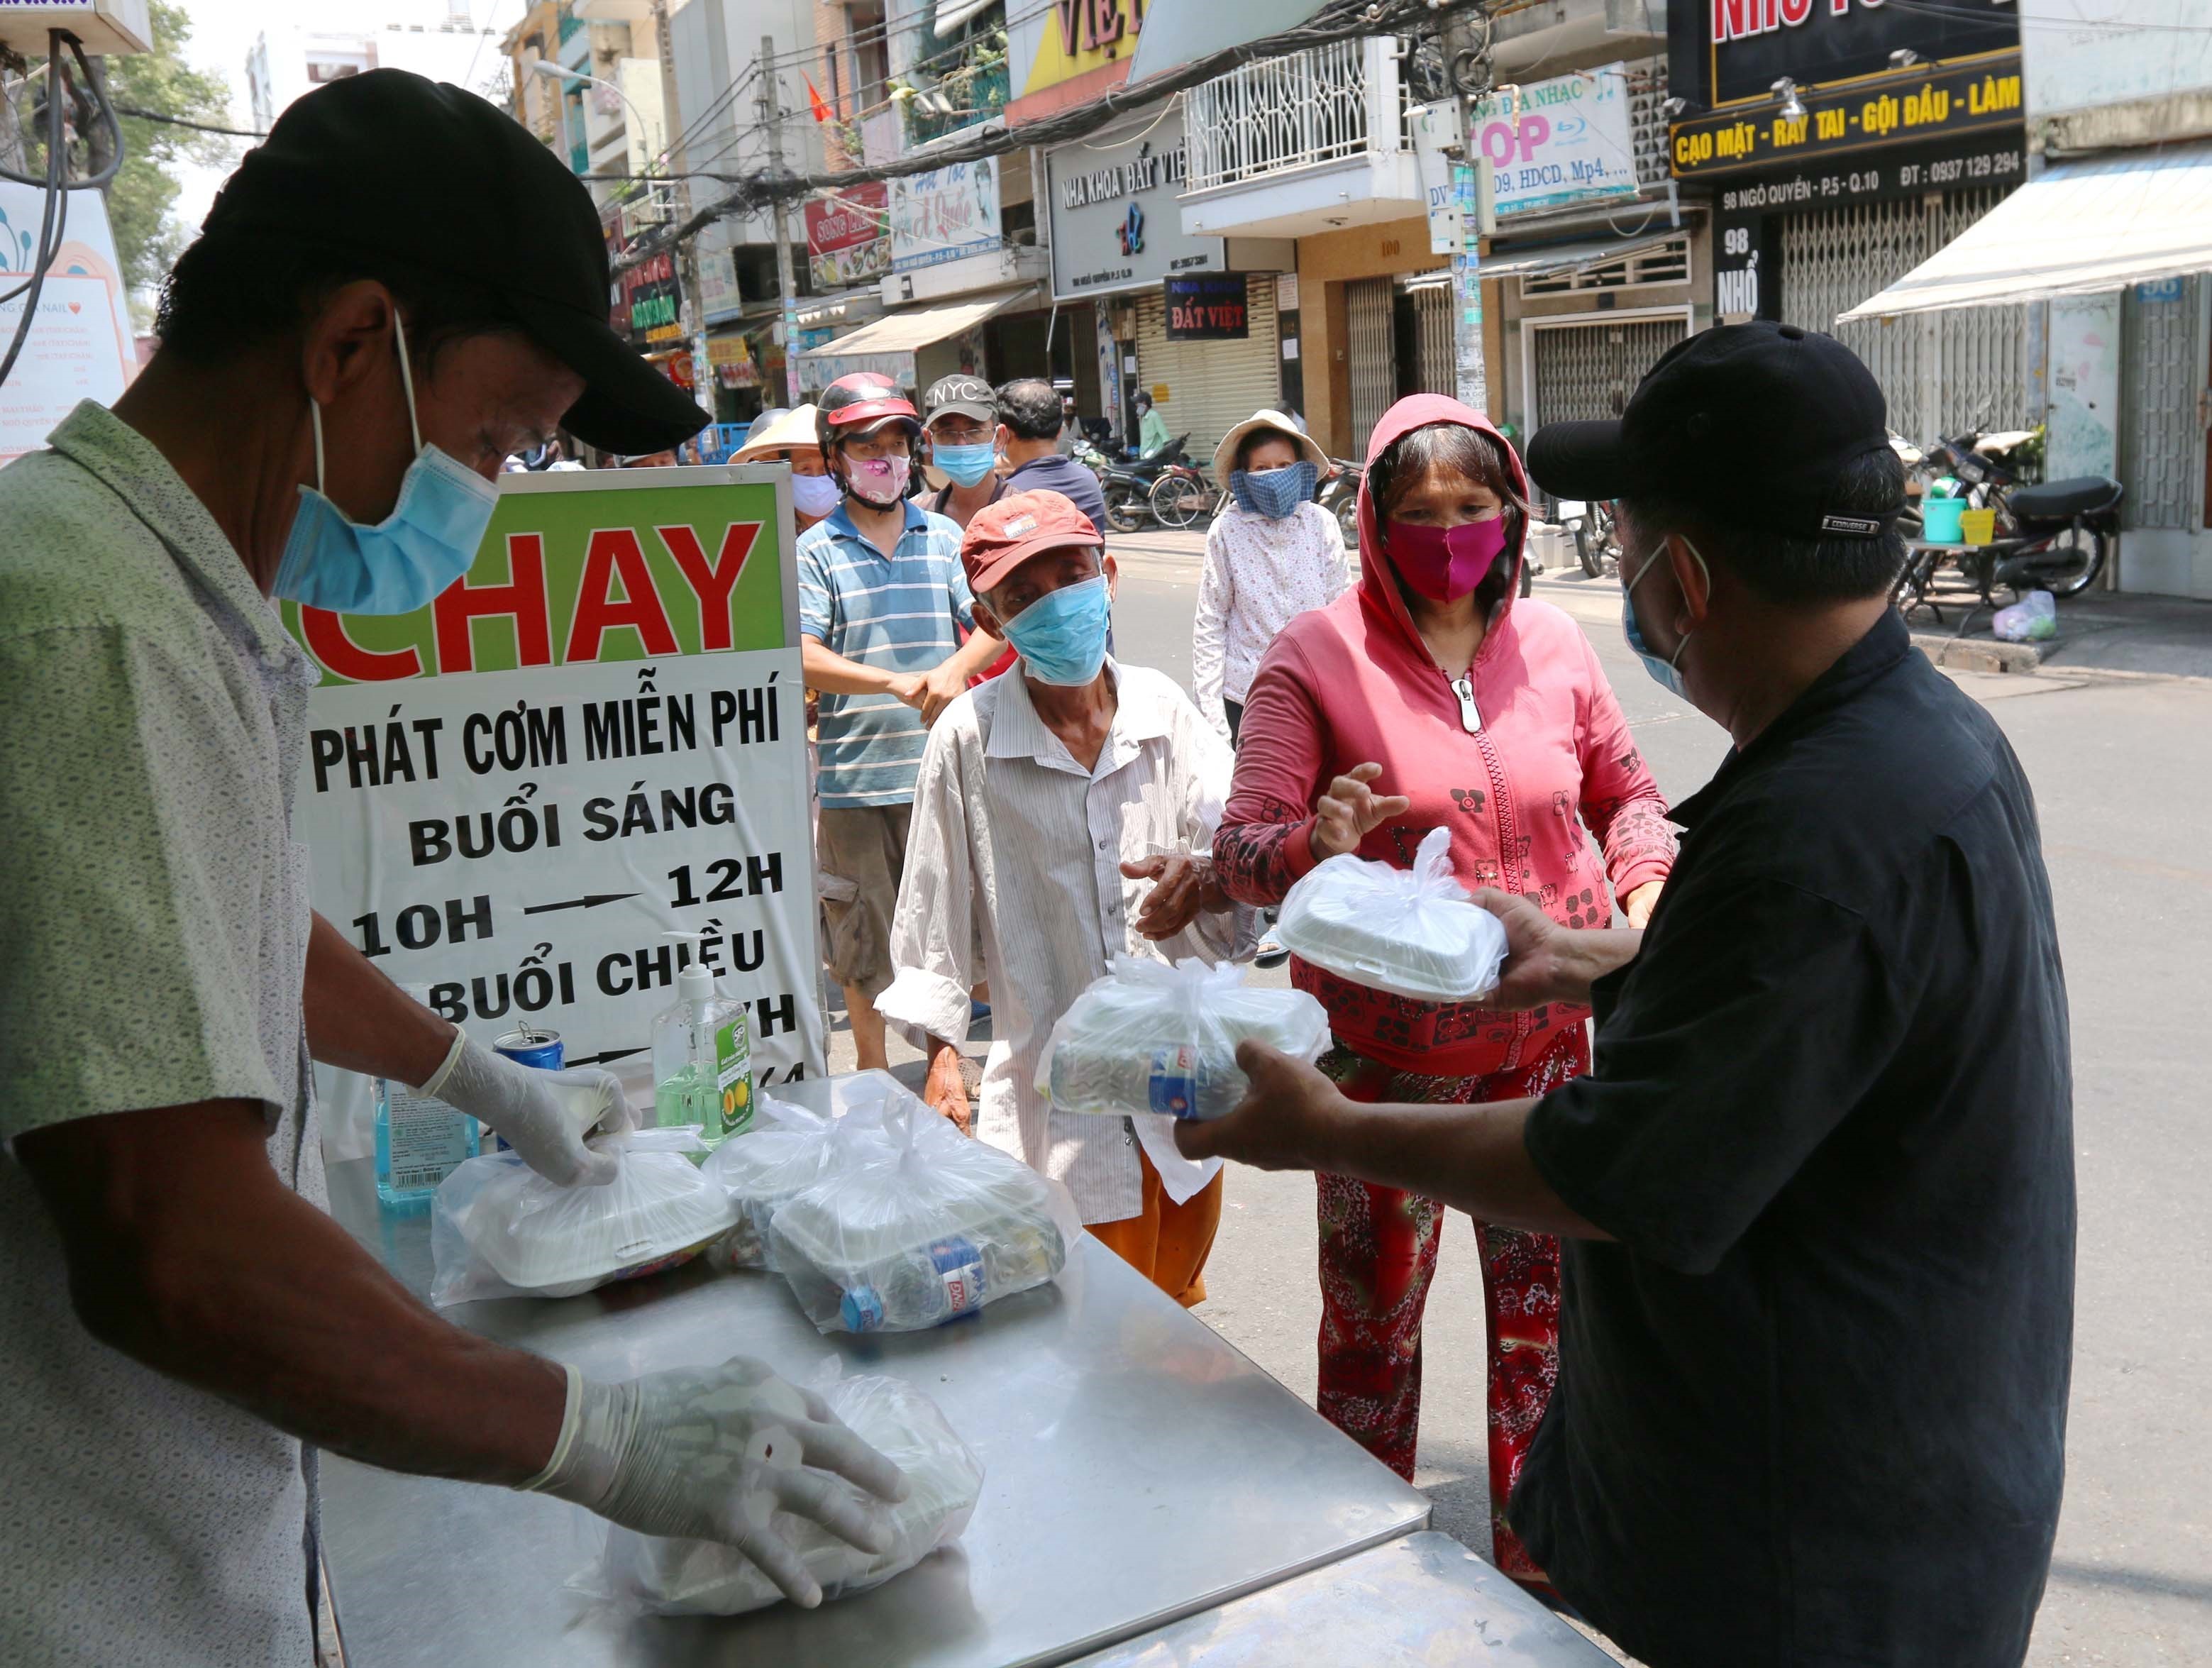 Từng phần cơm miễn phí được trao tận tay người nghèo tại cửa hàng cơm chay Bình An trên đường Ngô Quyền, quận 10 trong mùa dịch COVID-19. (Ảnh: Thanh Vũ/TTXVN)